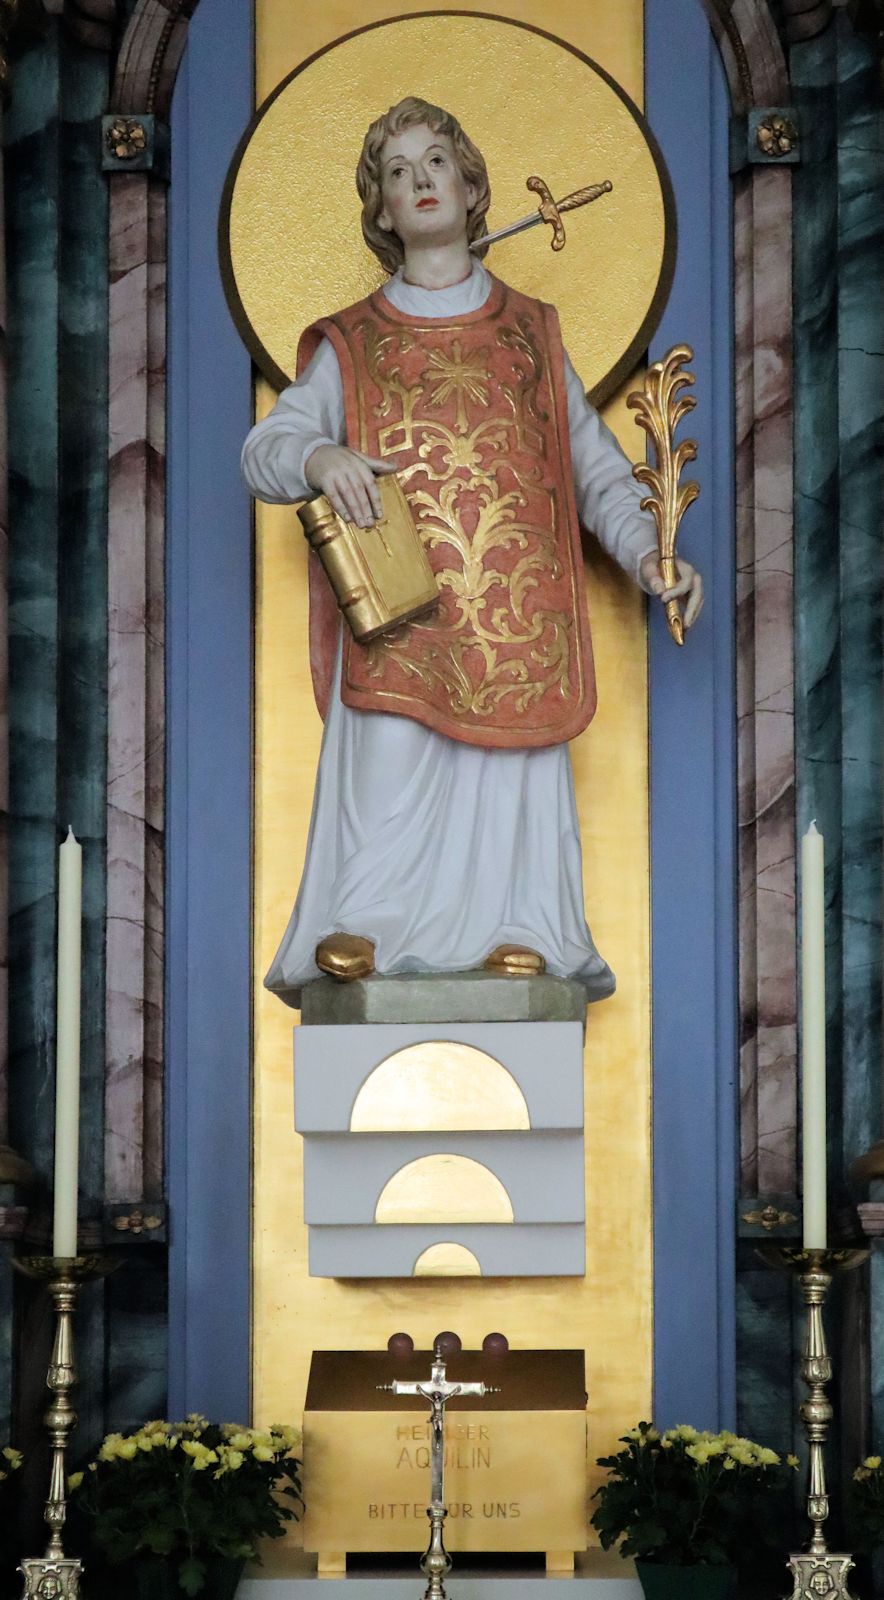 Aquilinus' Reliquie in der Kirche St. Peter und Paul in Würzburg